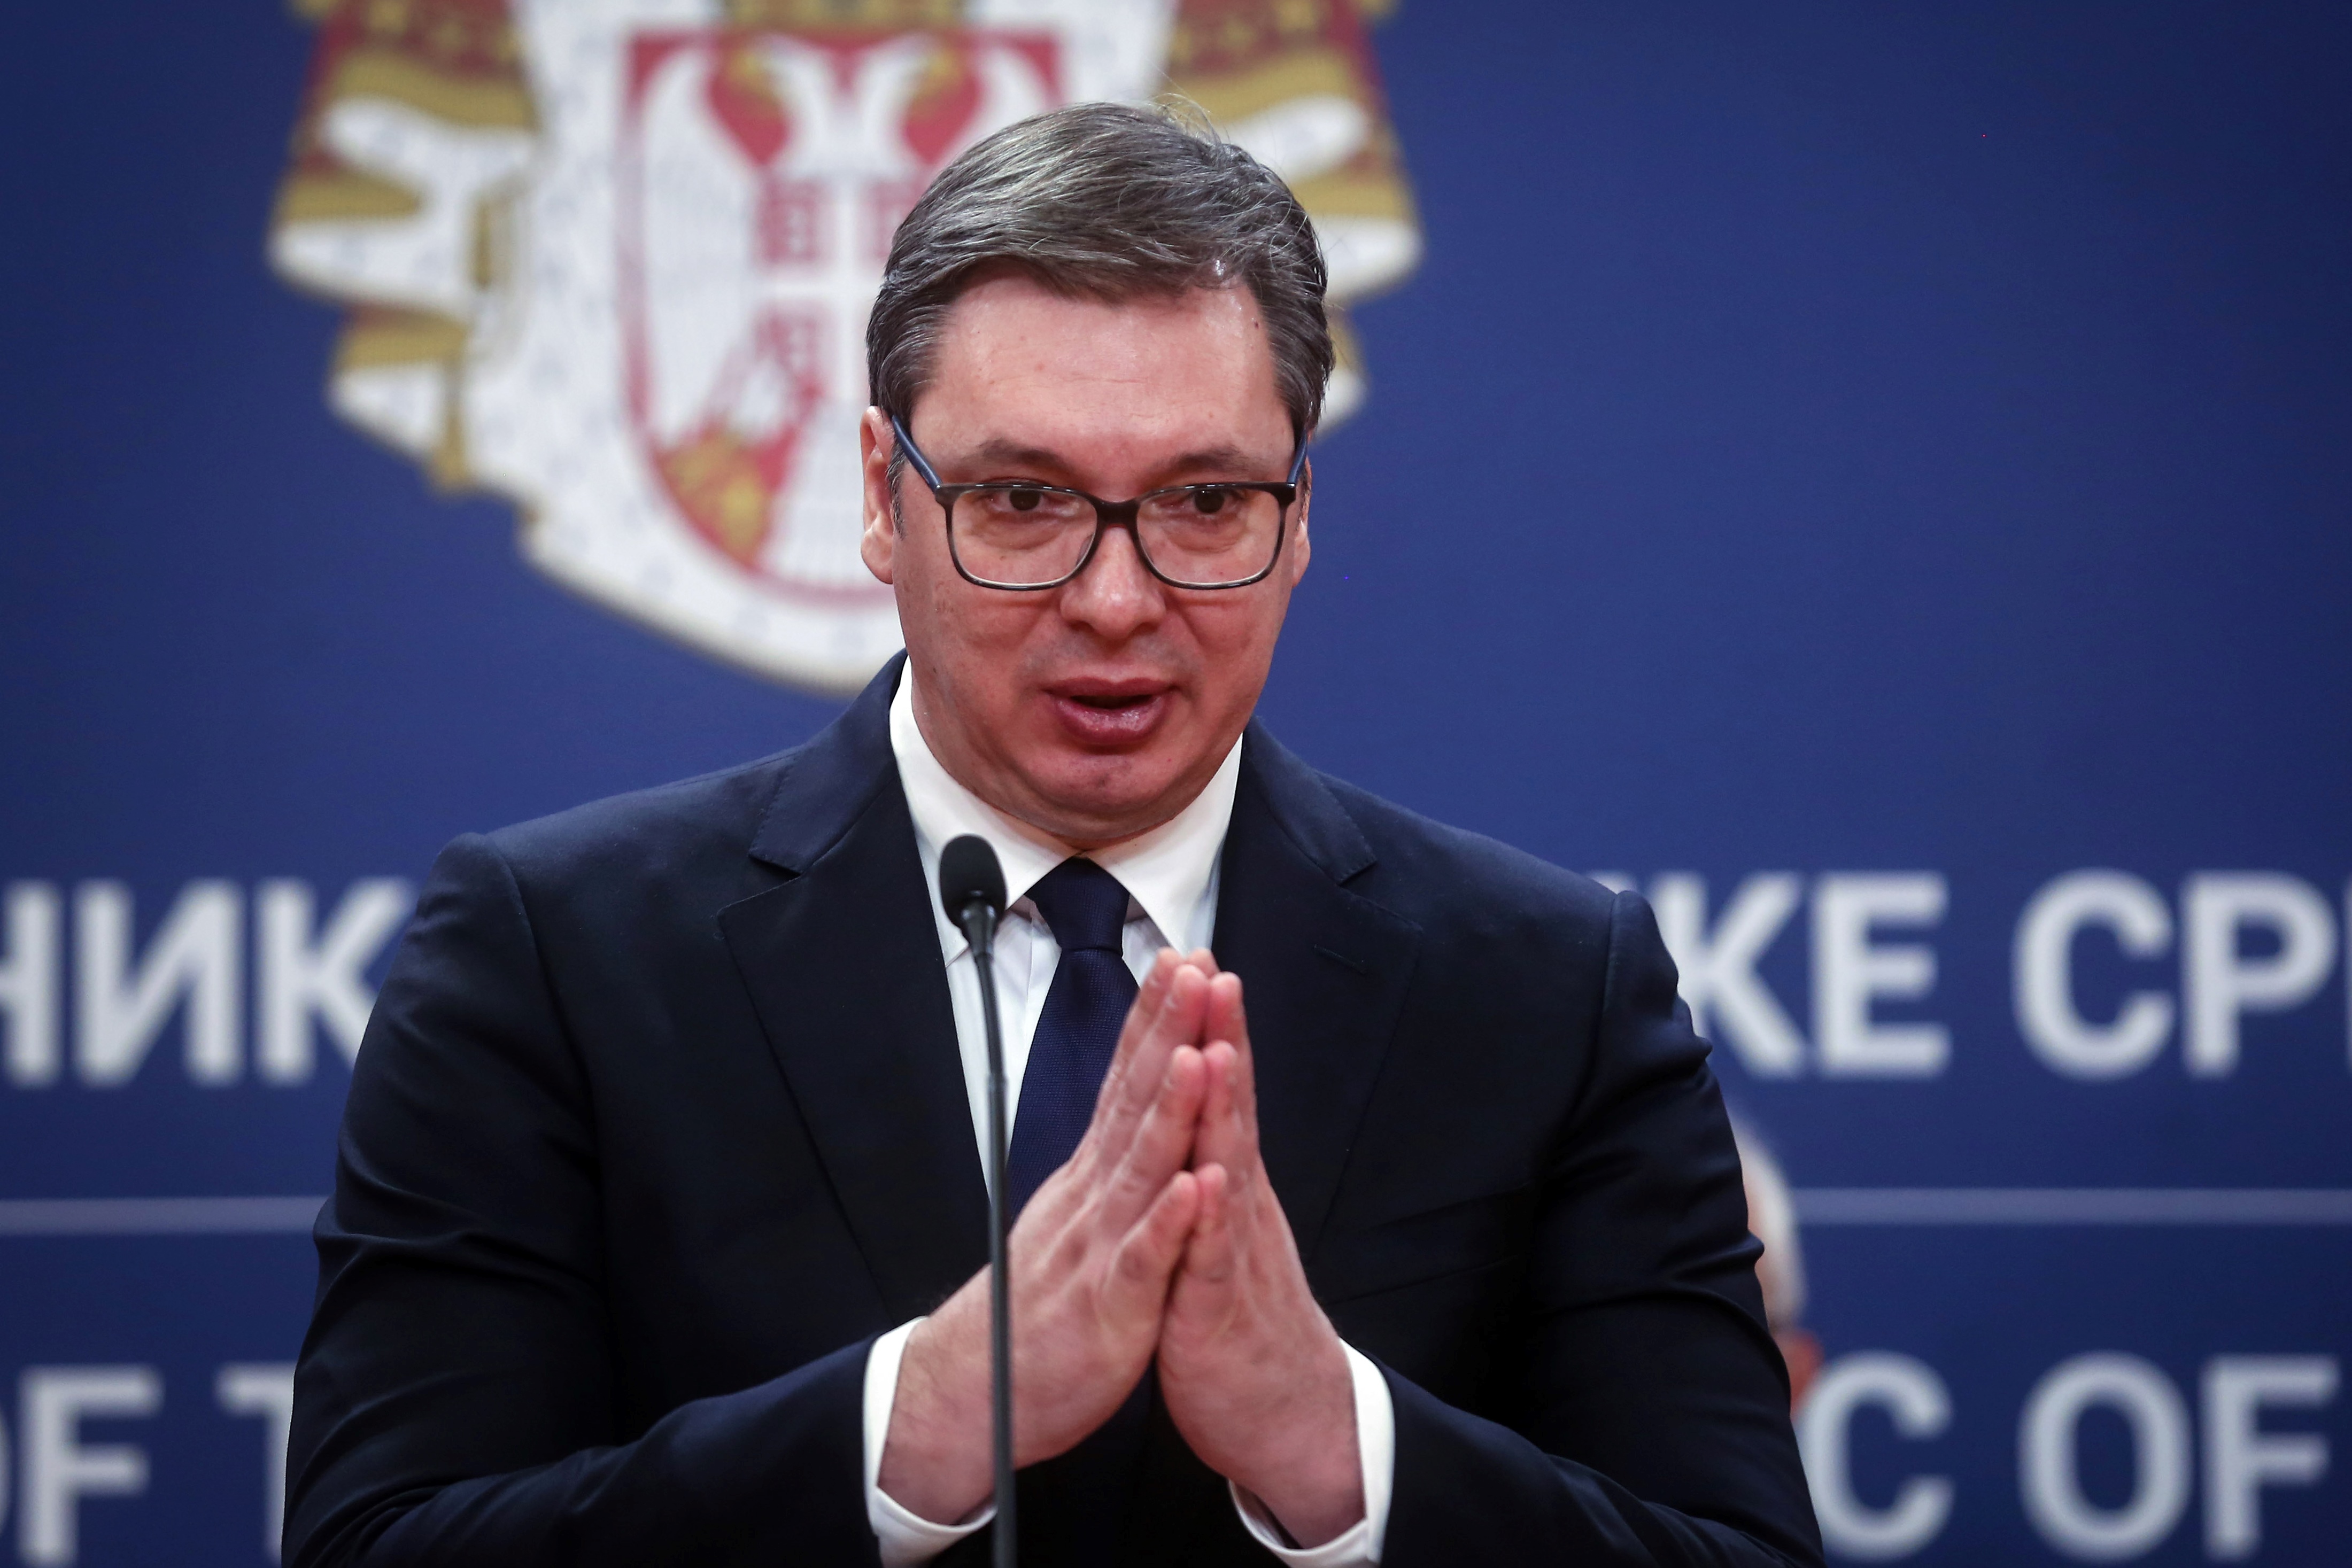 Aleksandar Vučić hazugságvizsgálatnak vetné alá magát